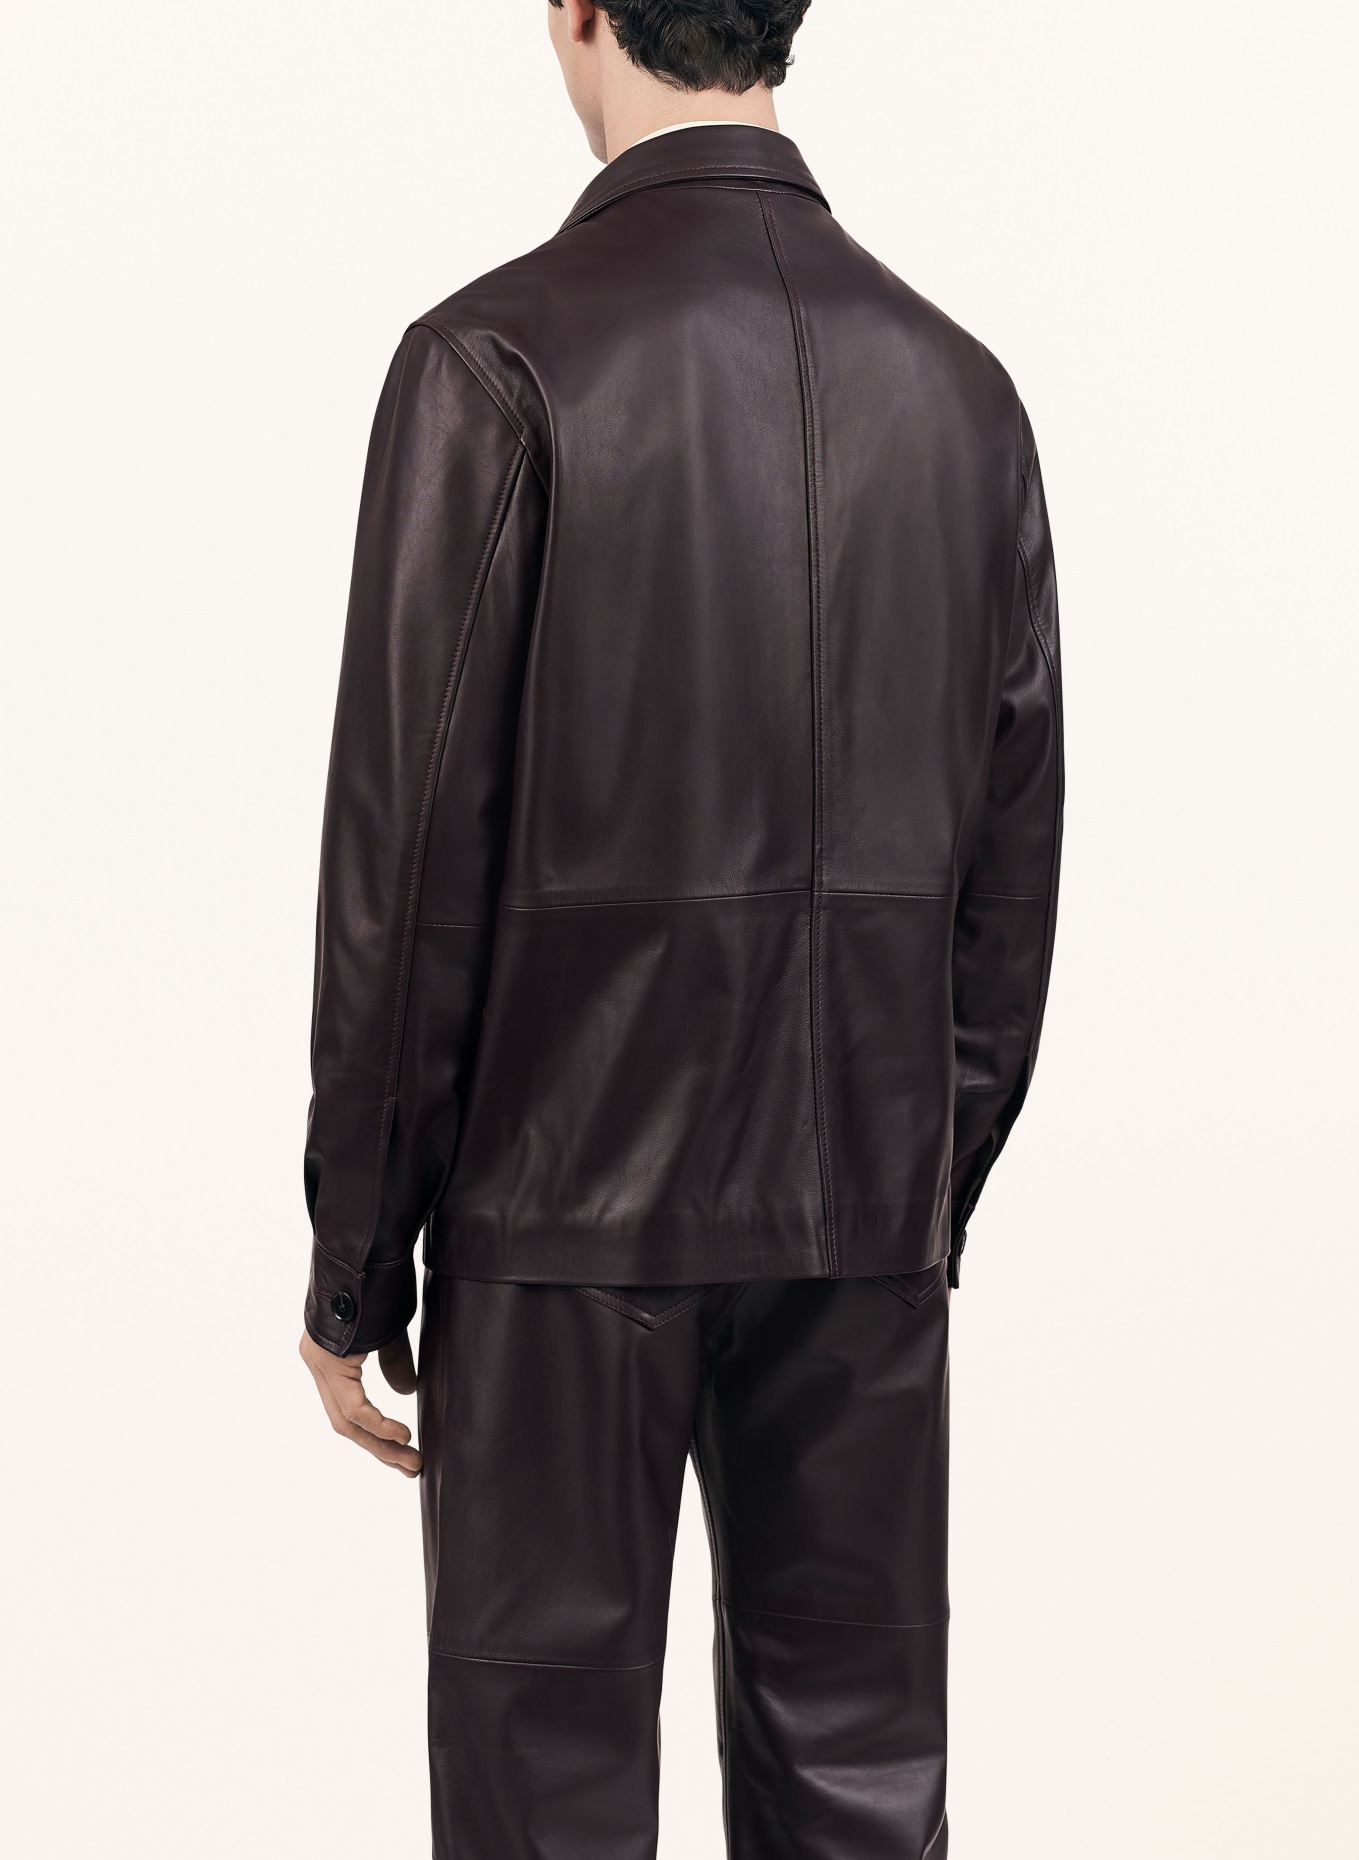 TIGER OF SWEDEN Leather jacket LESON, Color: 653 AUBERGINE (Image 3)